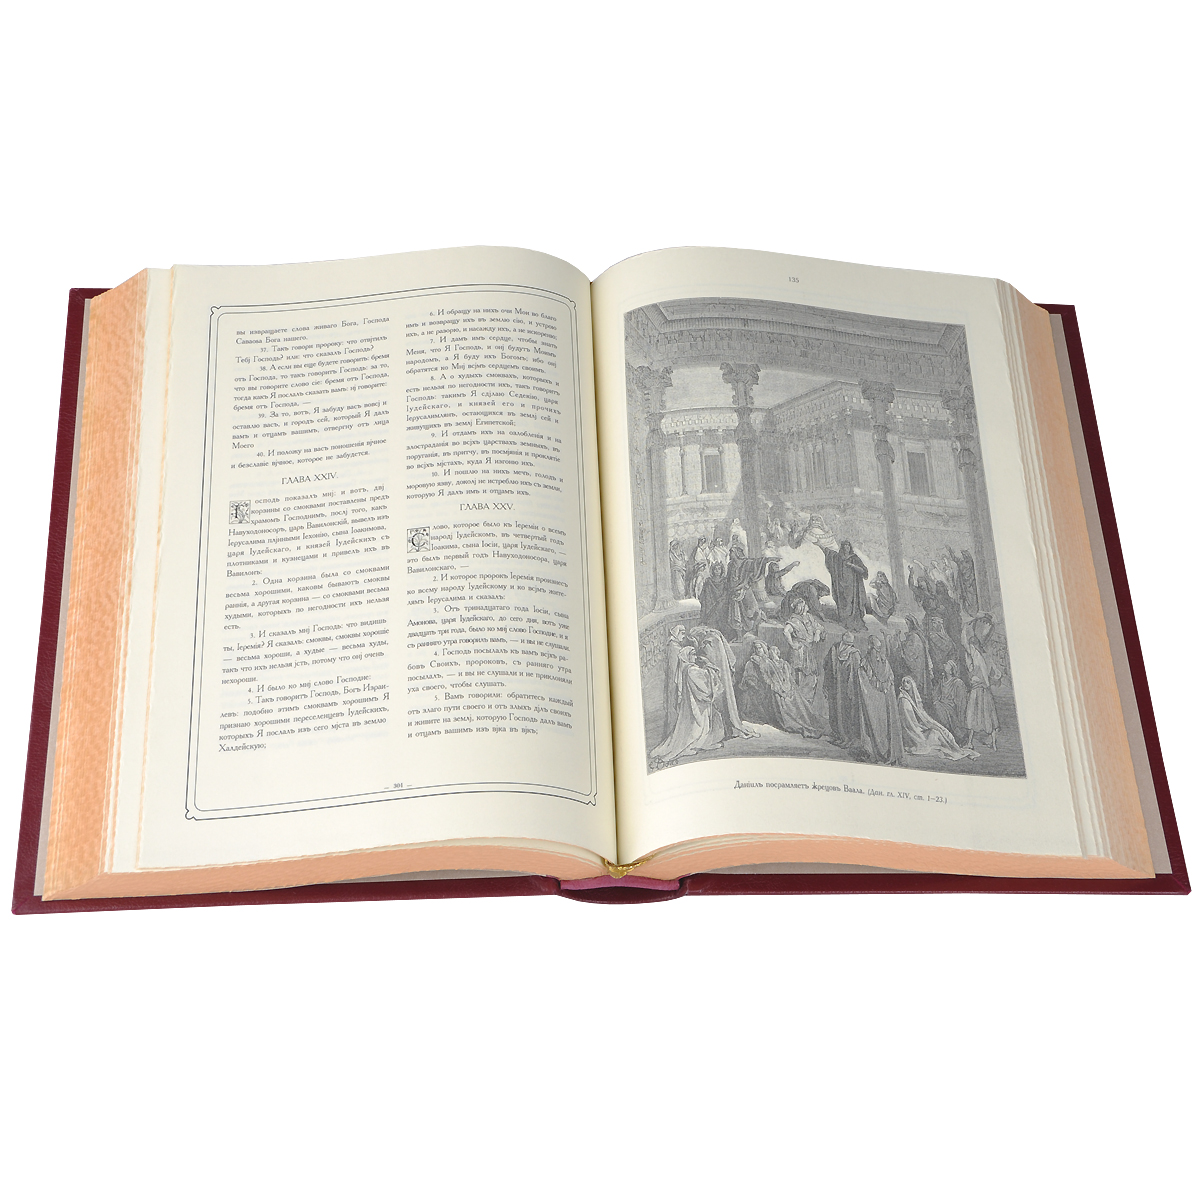 Библия с рисунками Густава Доре в 3 книгах (эксклюзивное подарочное издание) изменяется запасливо накапливая